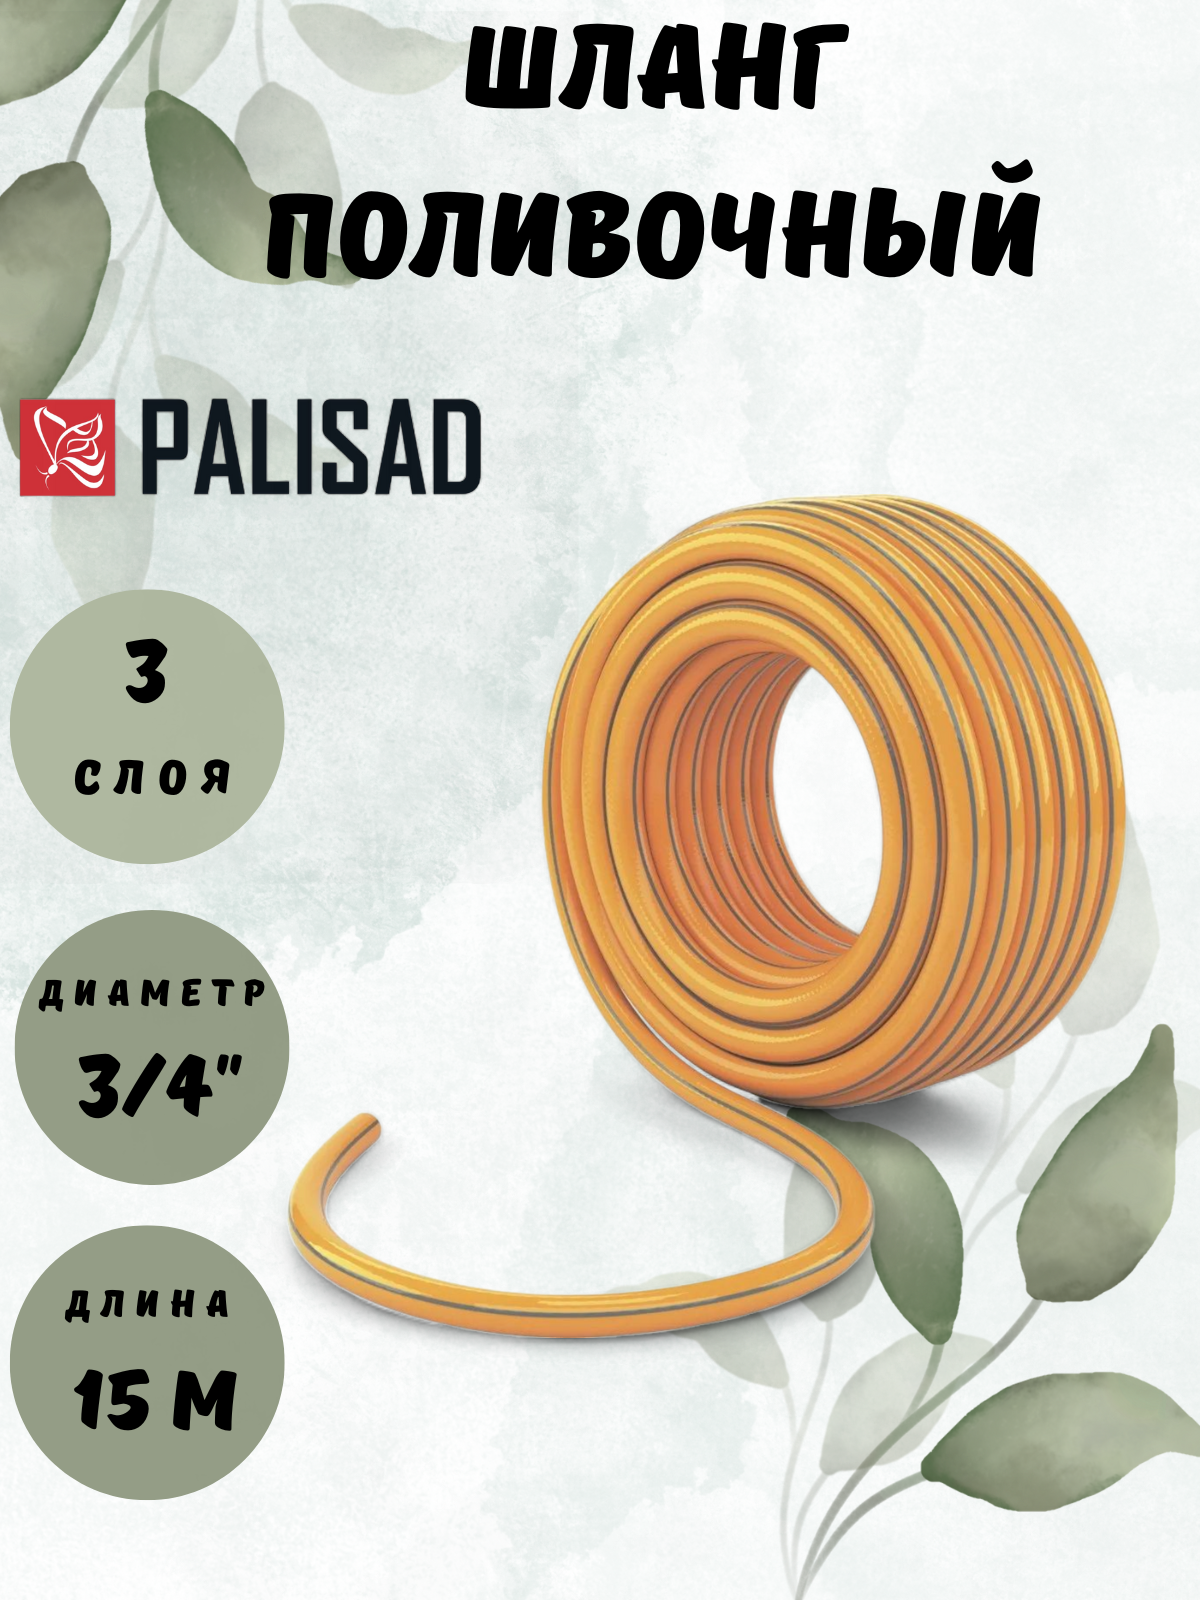 Поливочный армированный трехслойный шланг PALISAD - фото №5